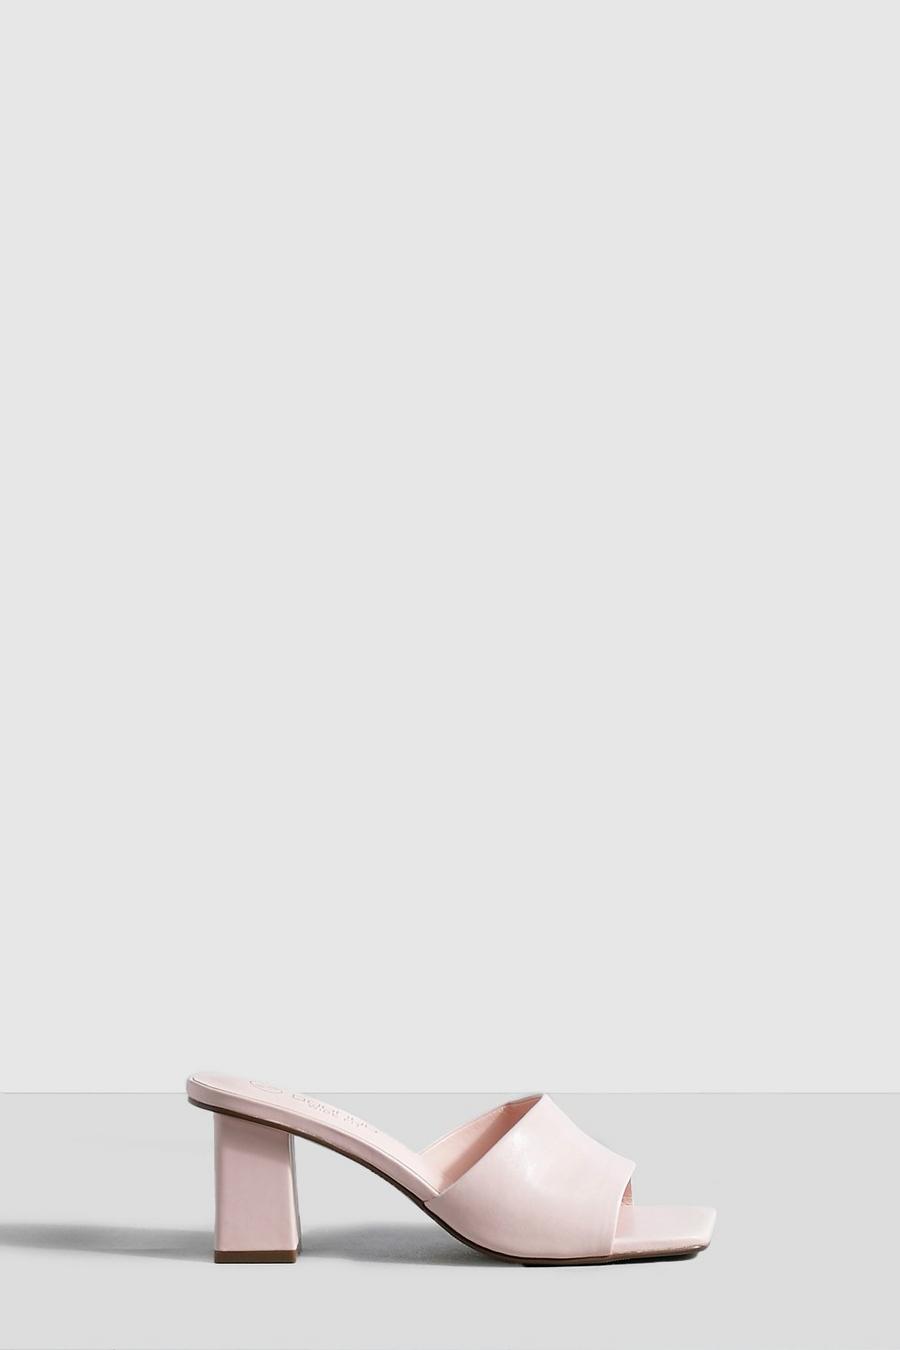 Sandali Mules a calzata ampia con tacco basso a blocco, Baby pink